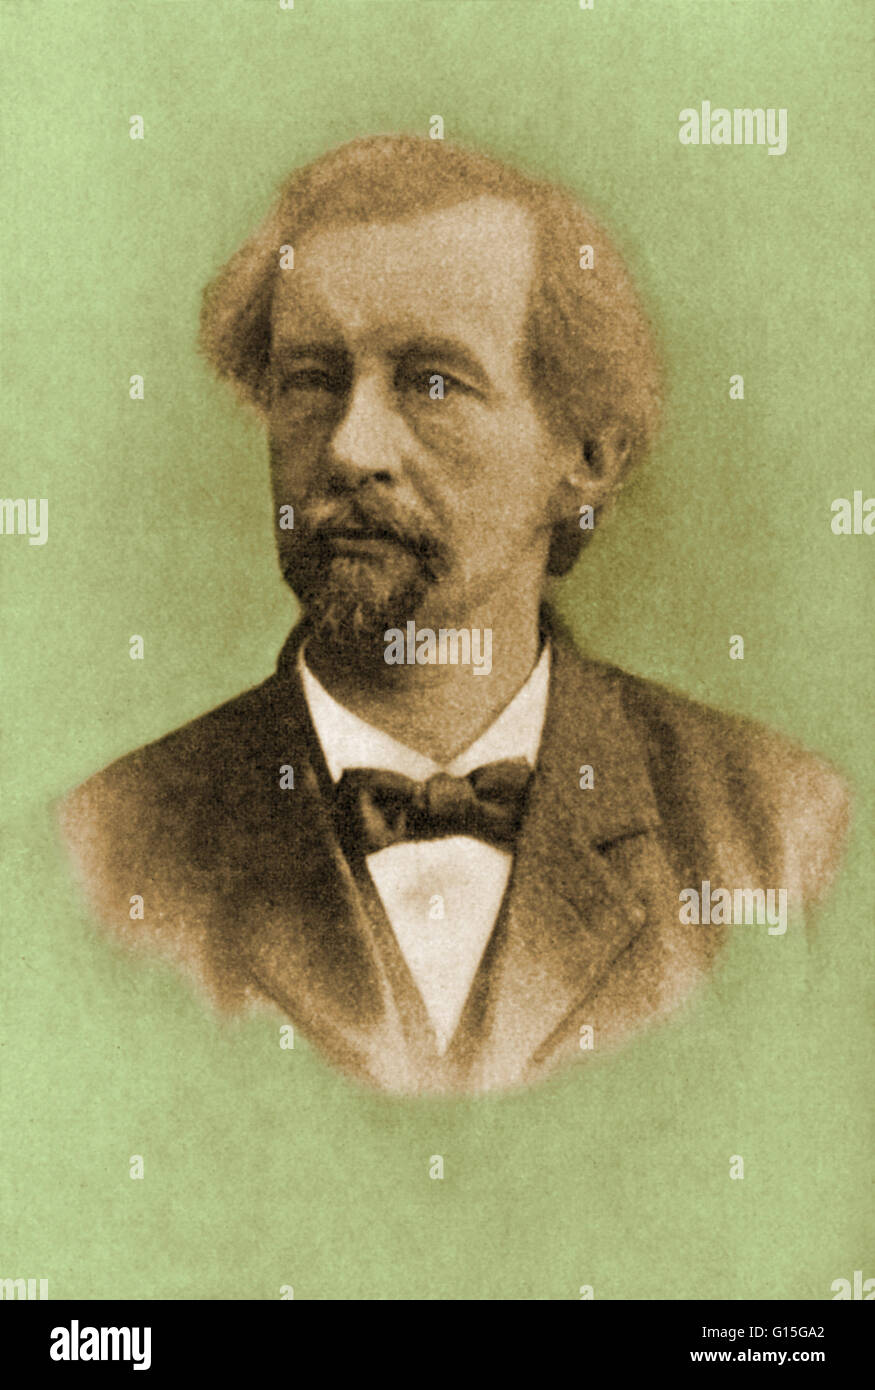 Hugo Marie de Vries (1848 – 1935) war ein niederländischer Botaniker und eines der ersten Genetiker. Im Jahre 1886 entdeckte er neue Formen der Nachtkerze (Oenothera Lamarckiana) wächst wild auf einer Wiese. Dabei Samen aus diesen, fand er, dass sie viele produziert neue Stockfoto